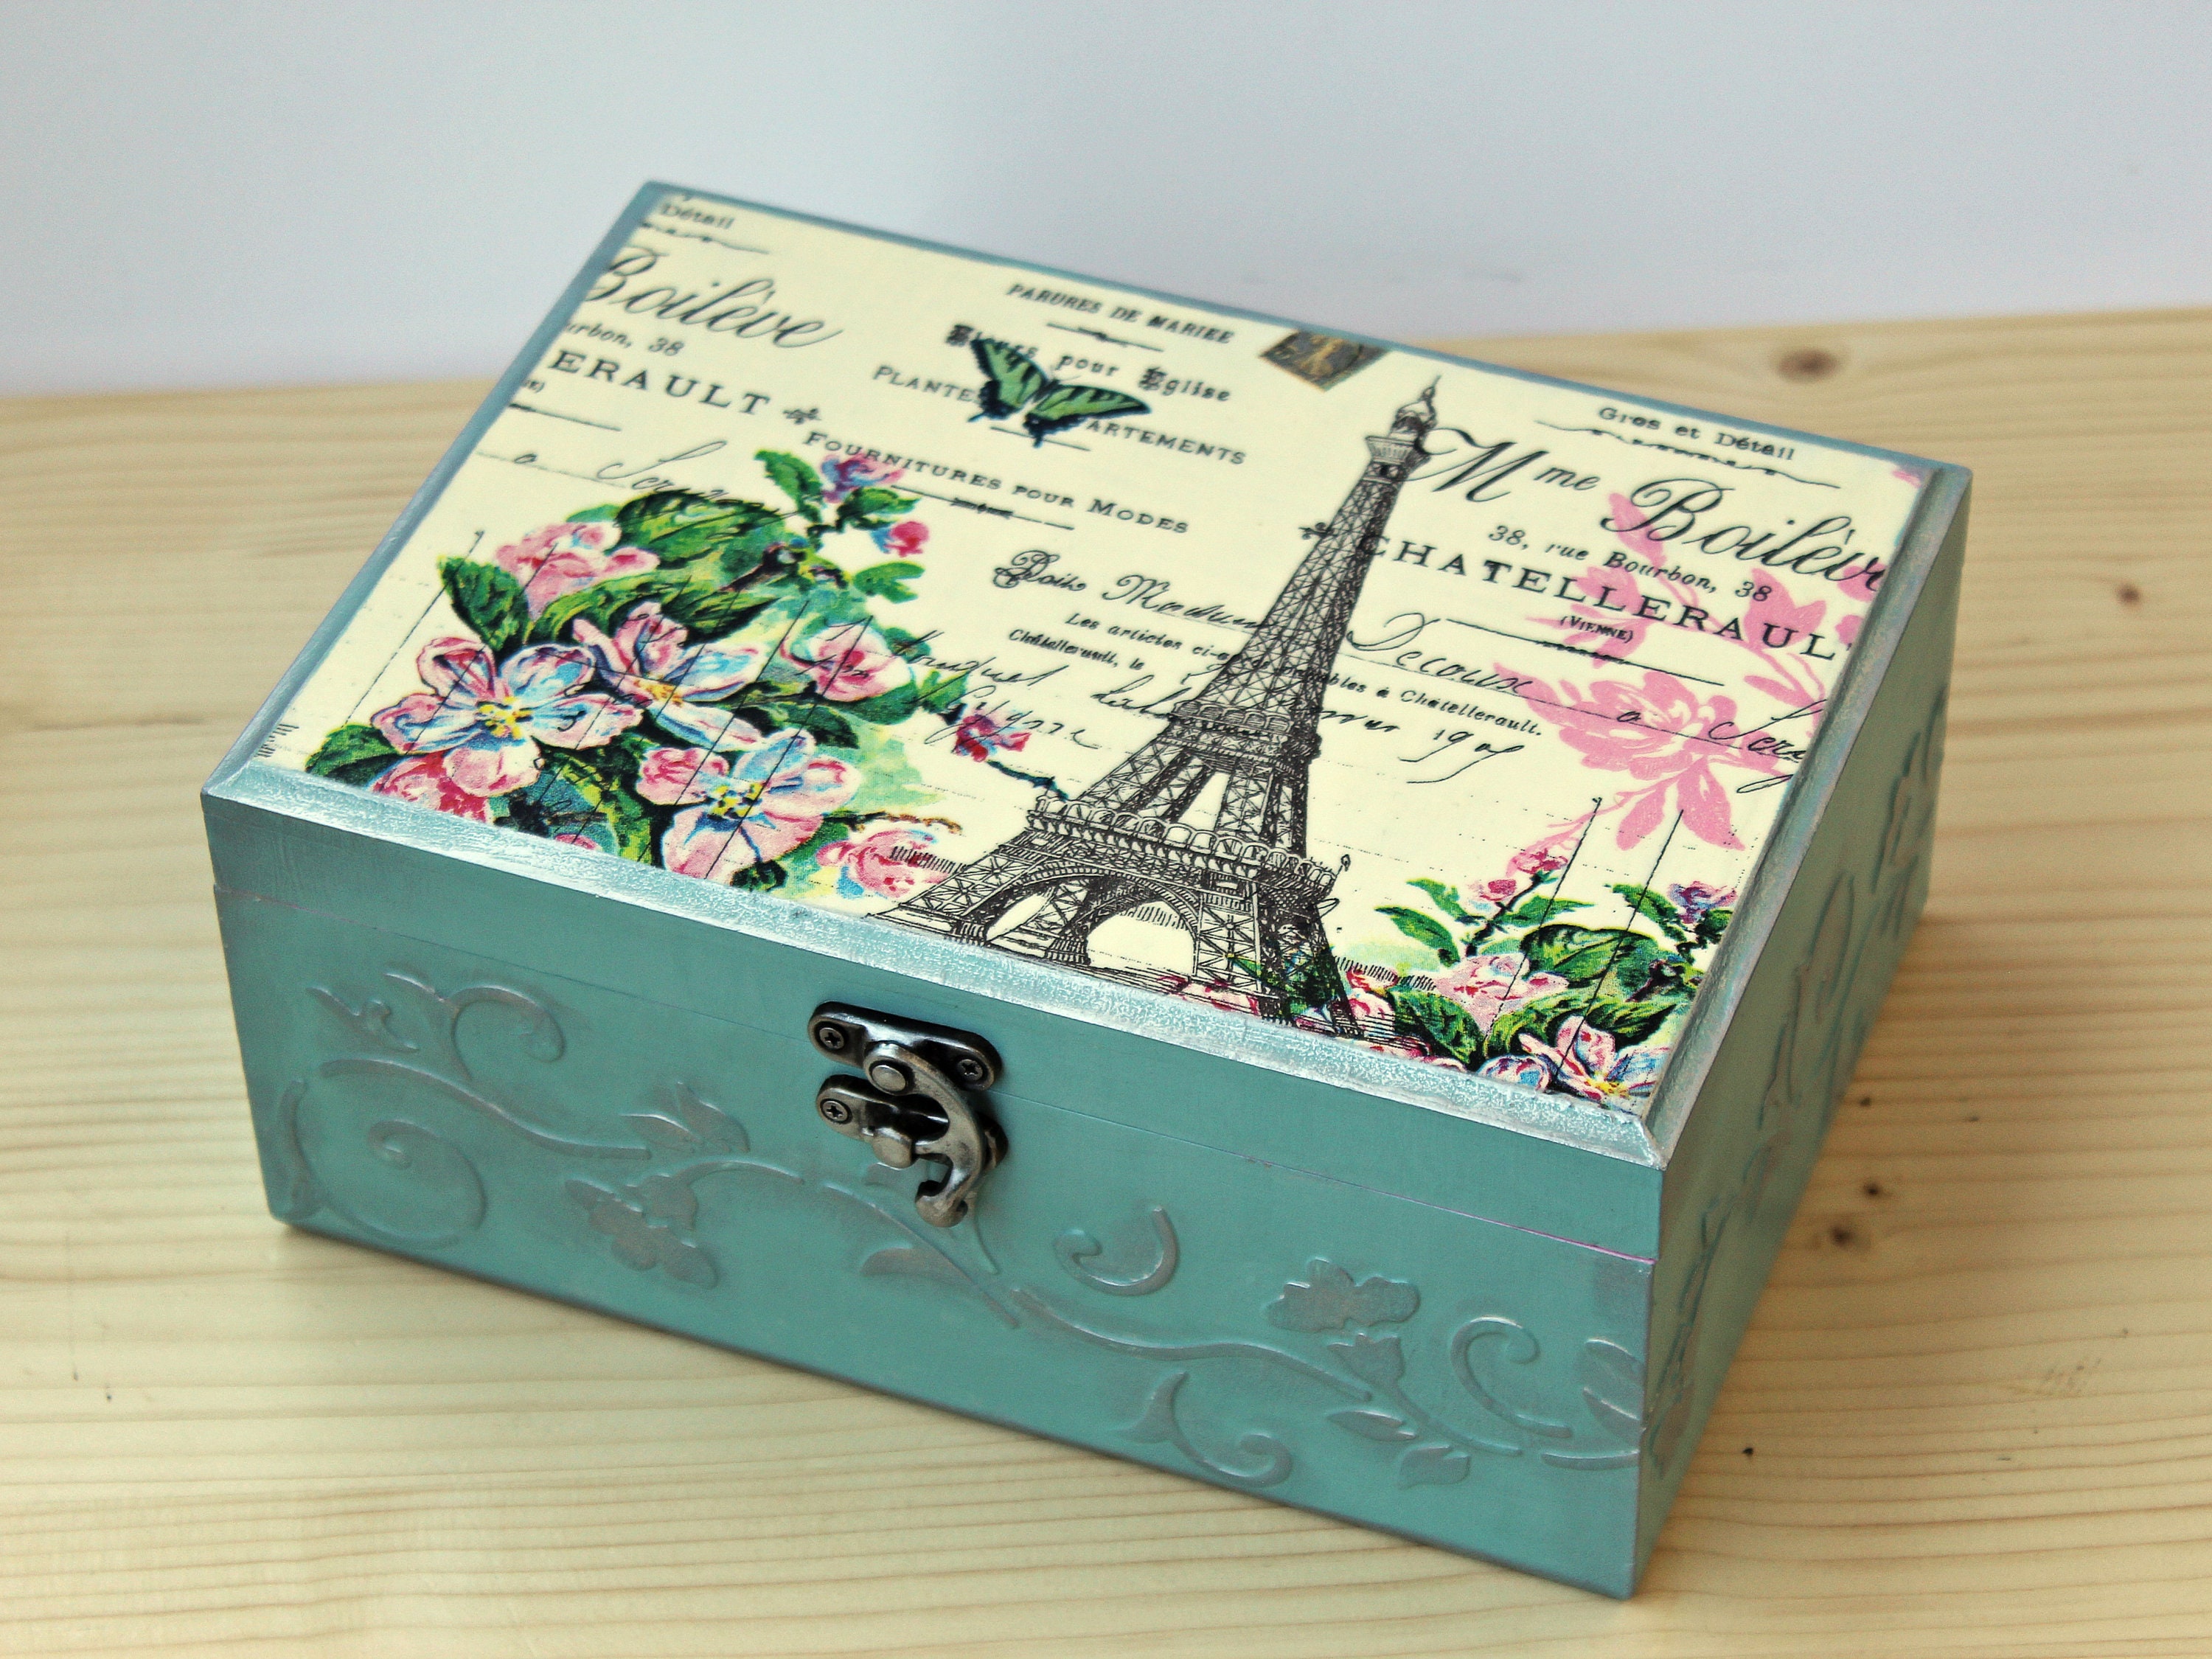 Vintage Paris Coffret Parfums De Luxe Miniatures Wood Jewelry Box